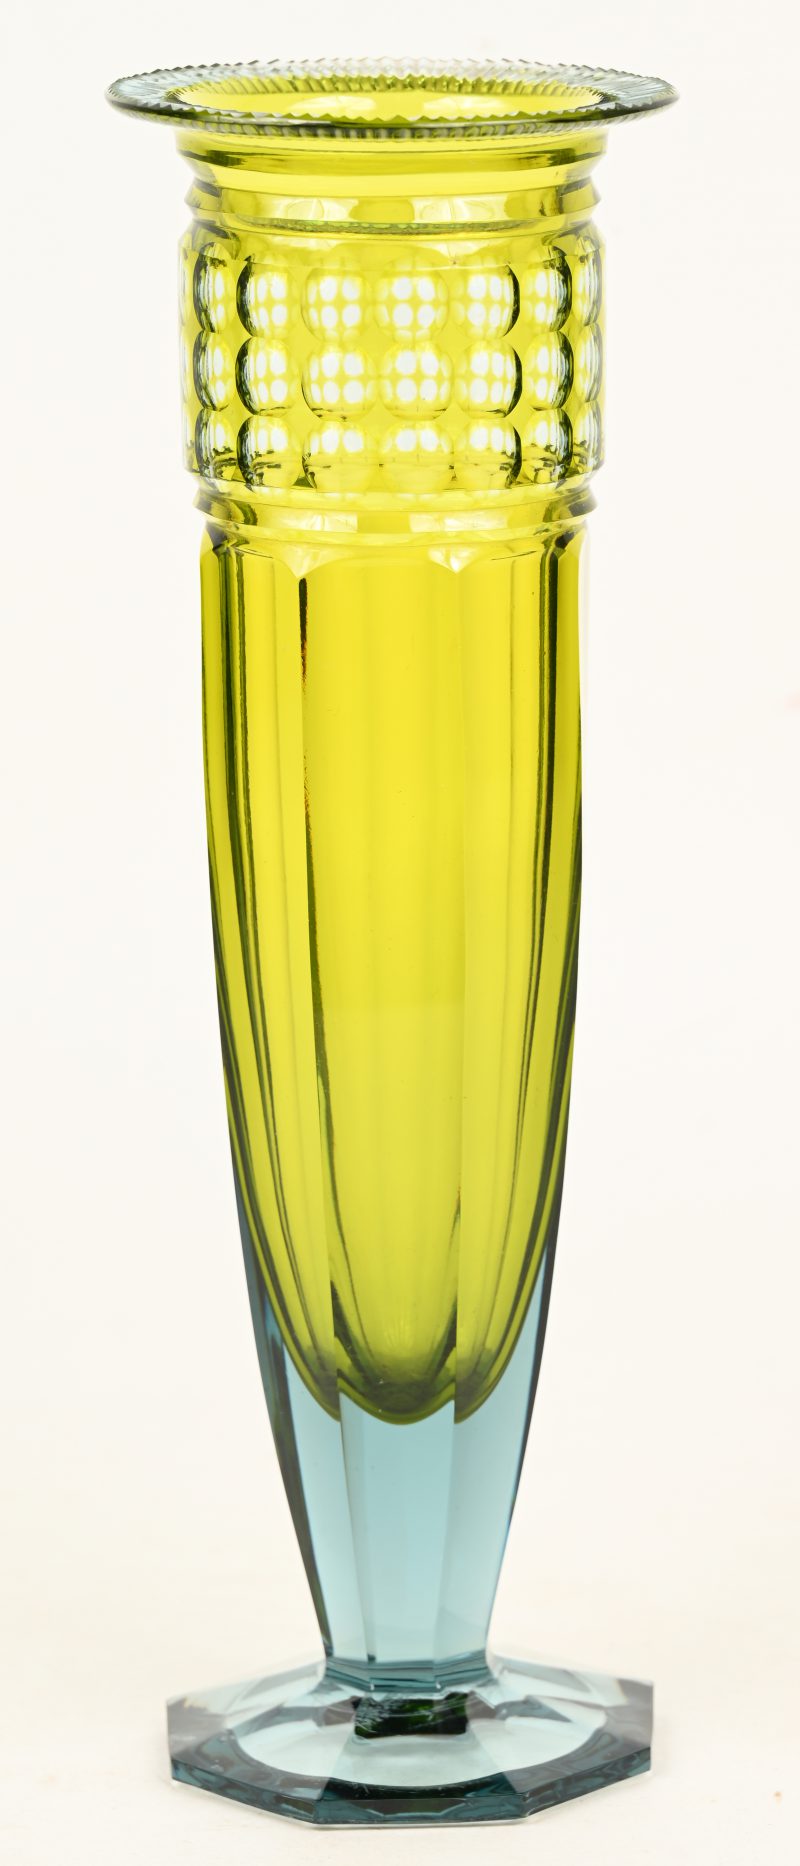 Vaas van invers geslepen kristal olijfkleurig in de massa met blauwe overgang naar de voet. Art deco periode. Model Fragnée.